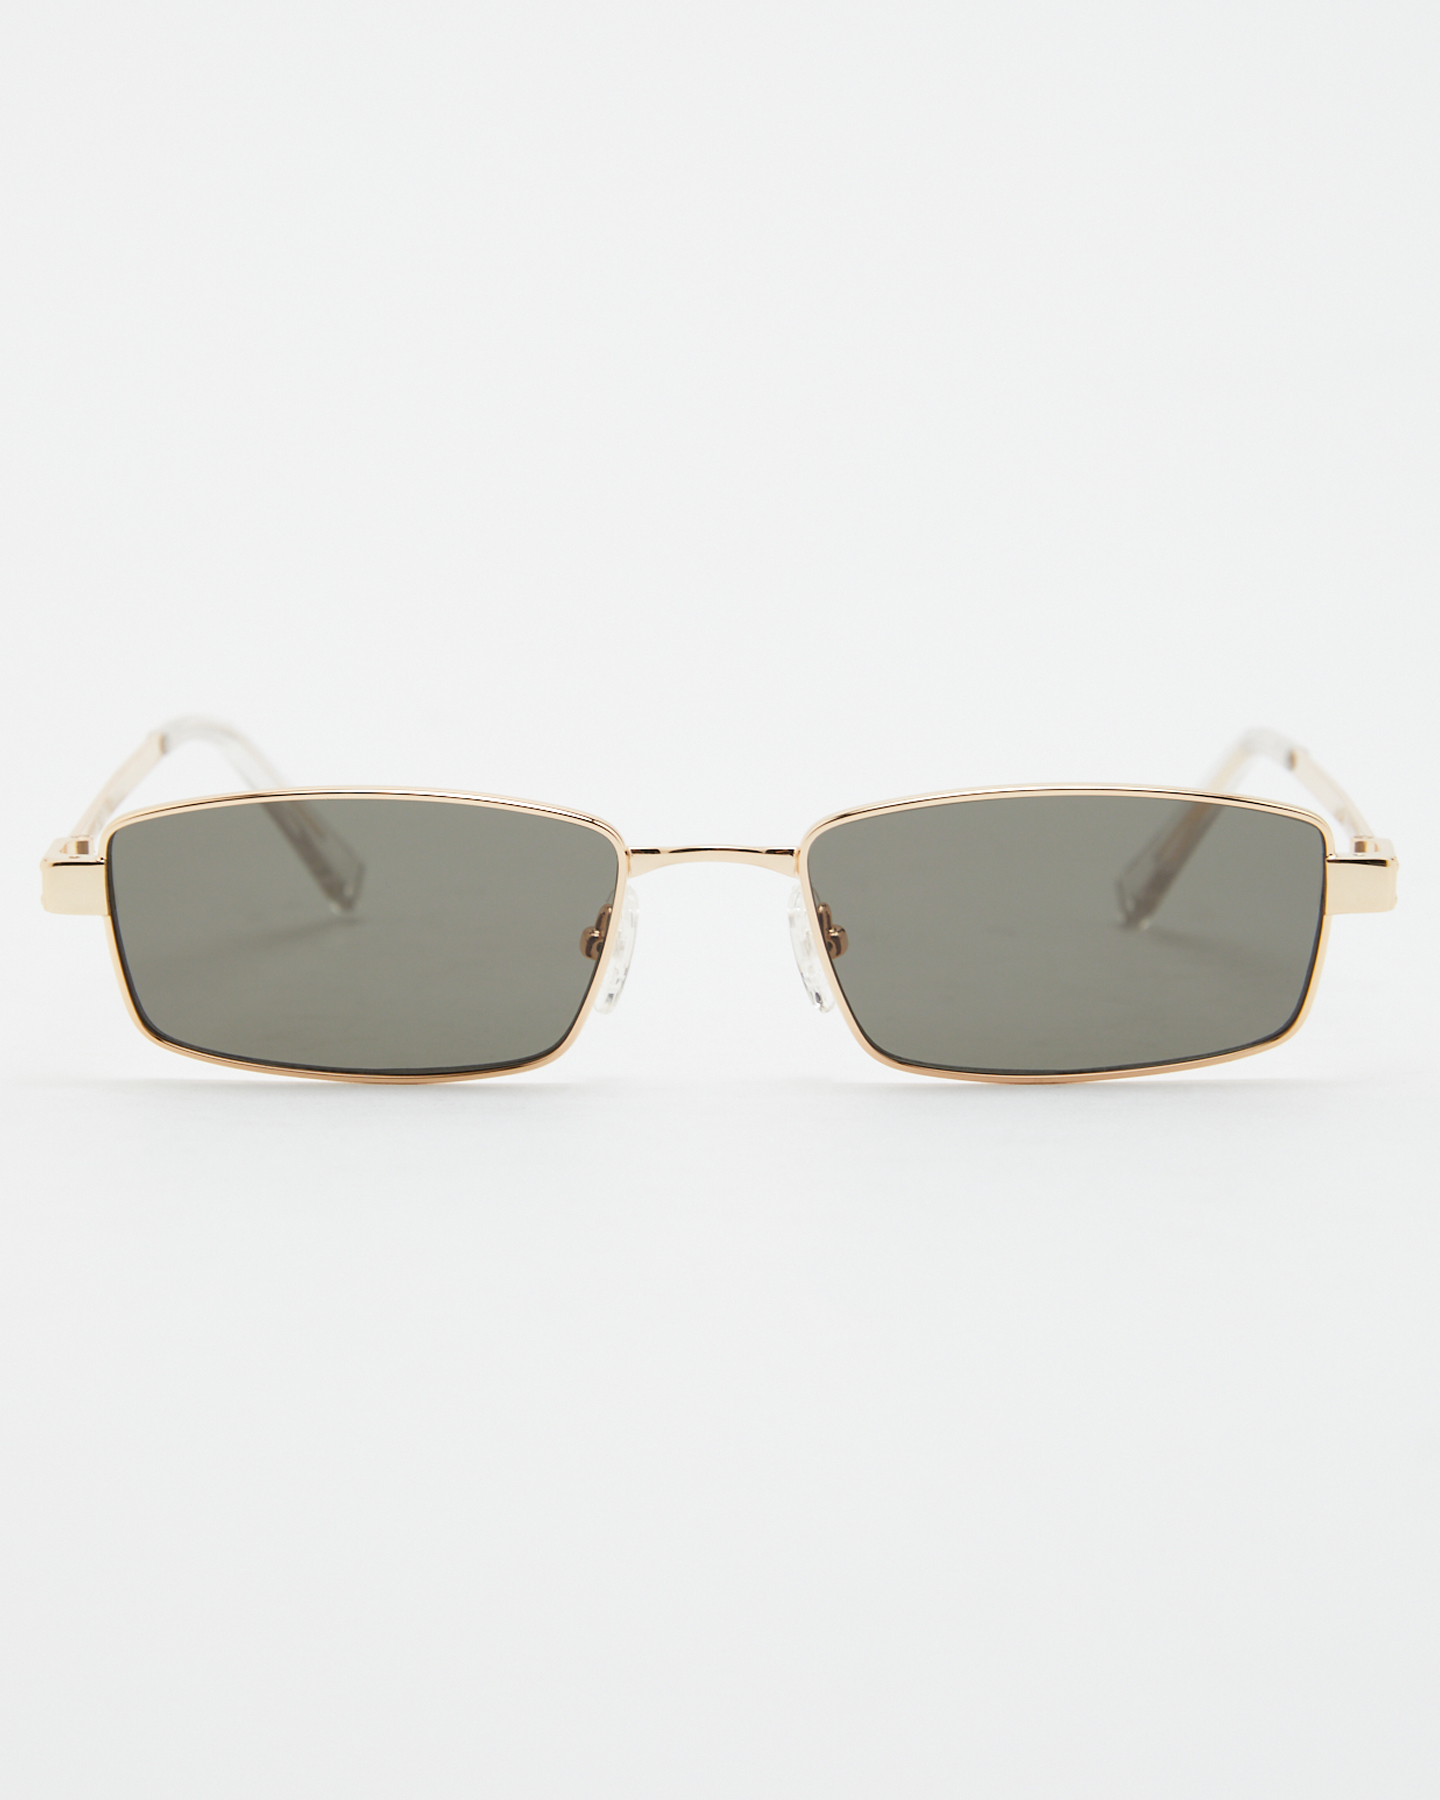 Le Specs Bizarro Sunglasses - Bright Gold Clear | SurfStitch